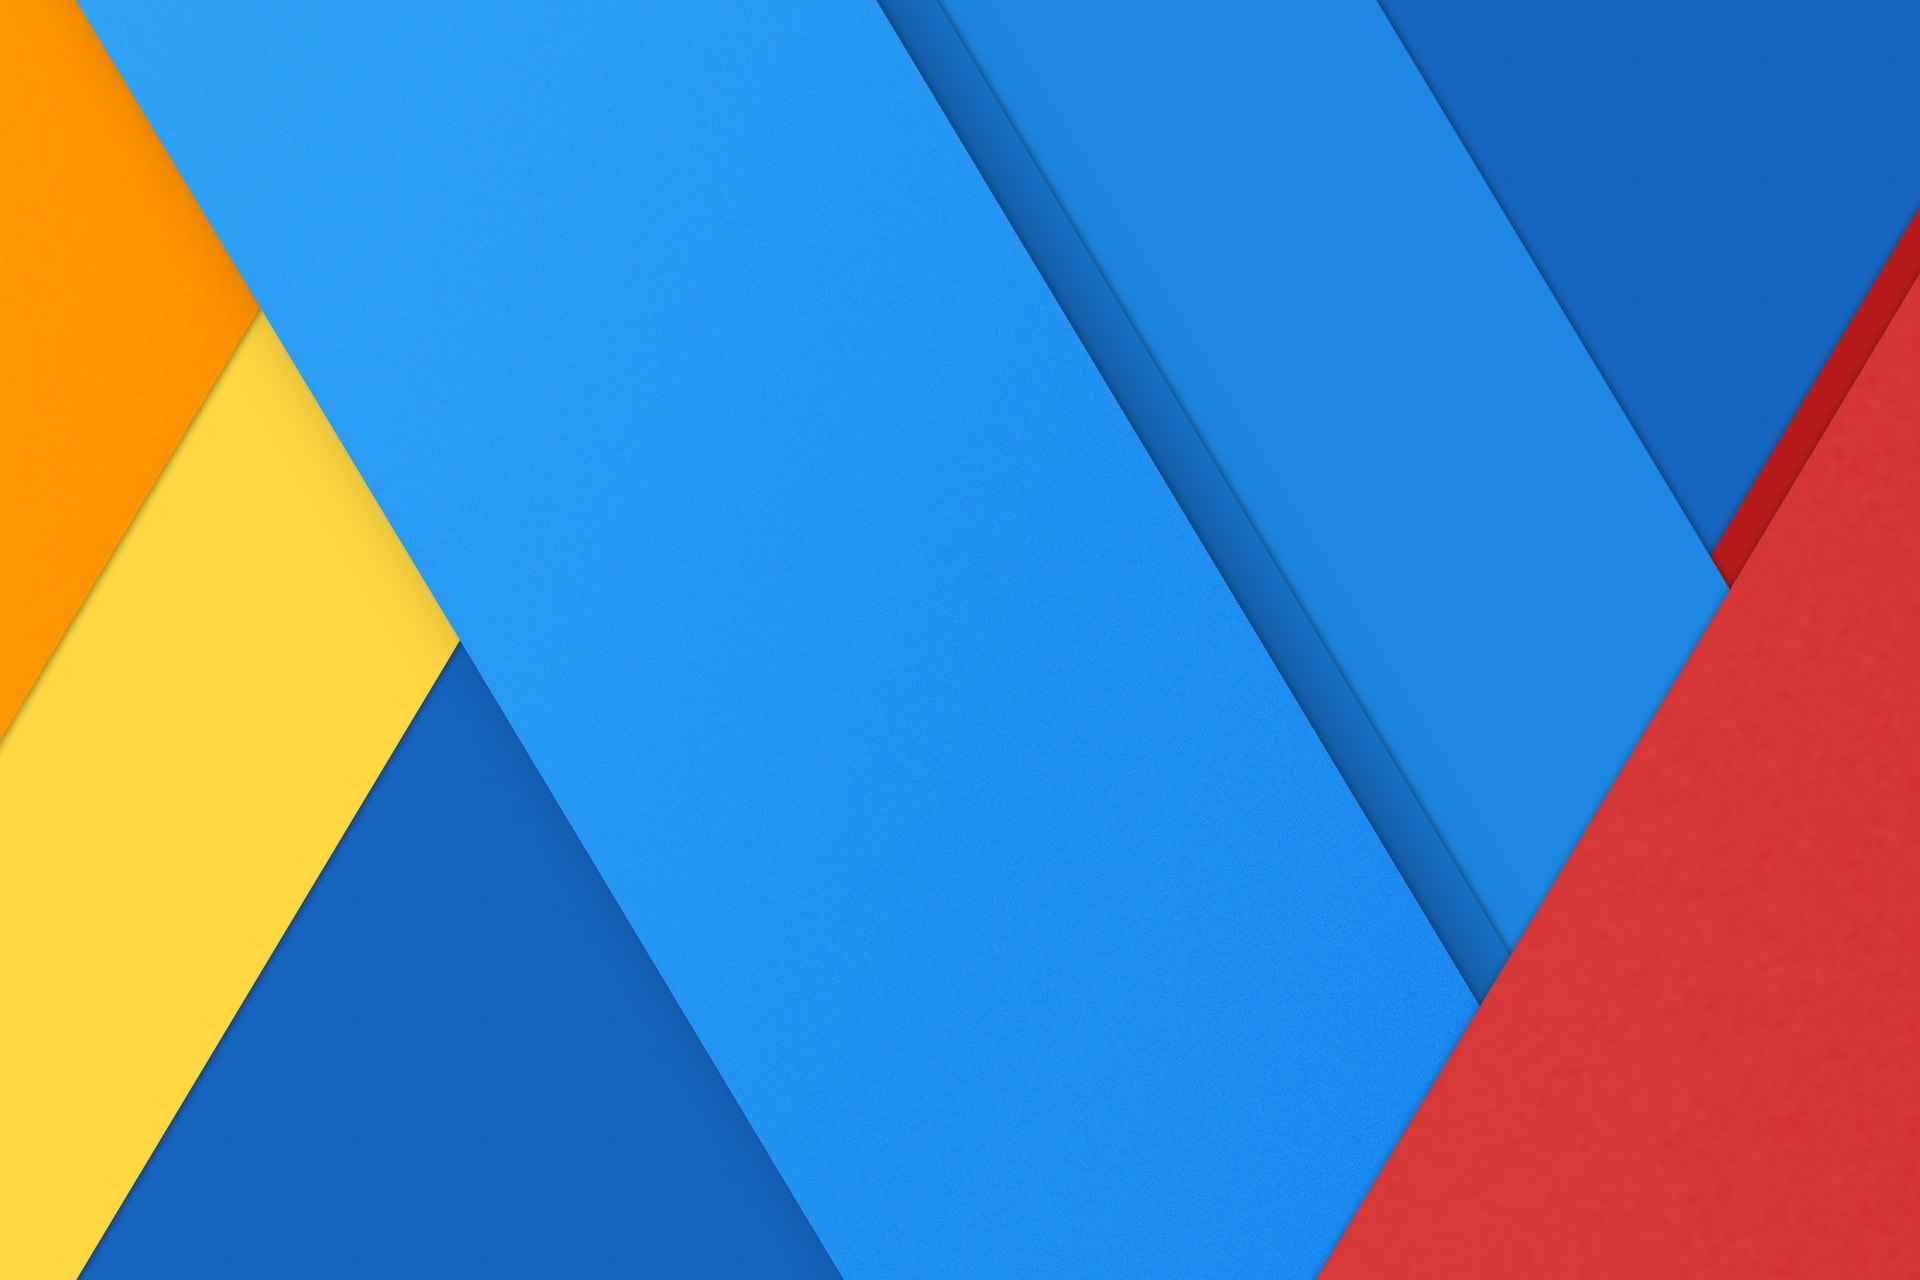 nexus 6p fondo de pantalla,azul,azul cobalto,rojo,azul eléctrico,amarillo